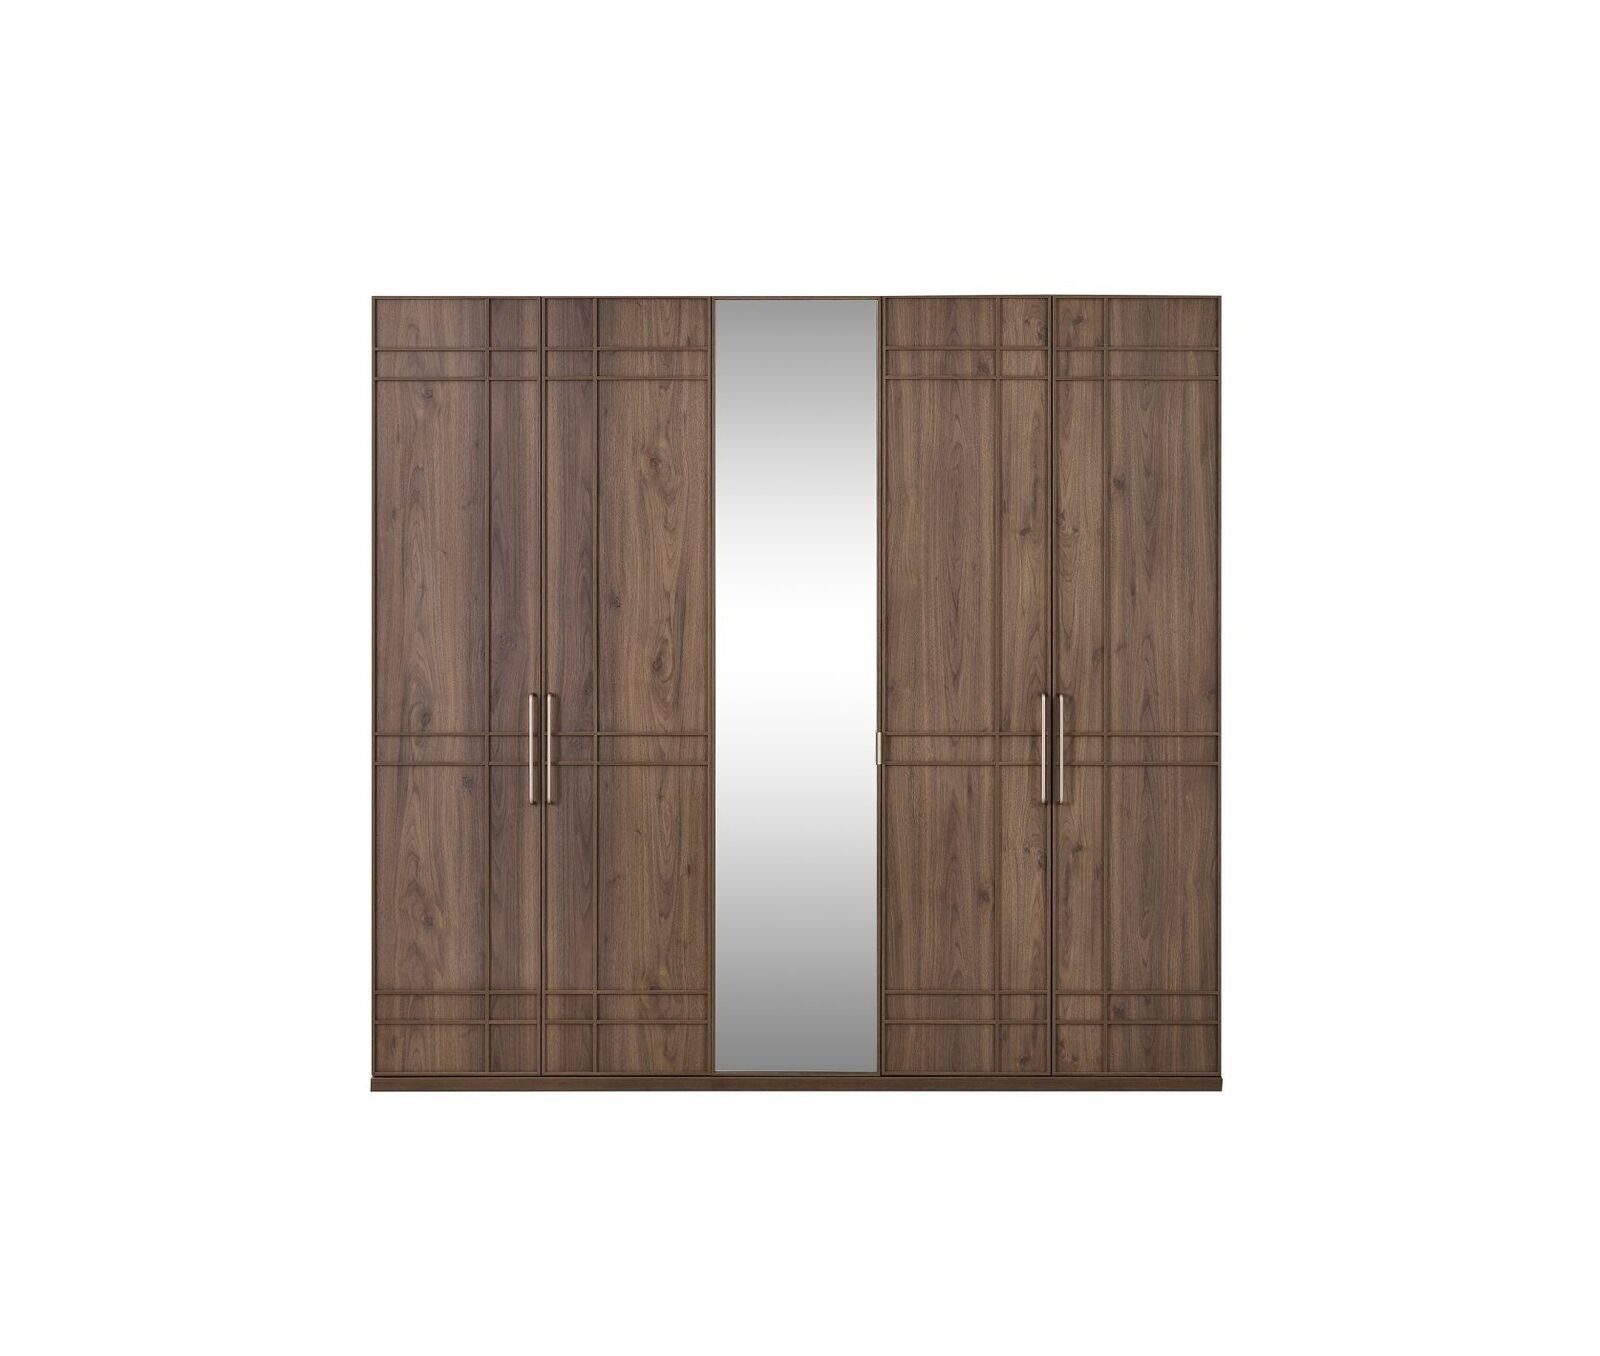 Holz Europe JVmoebel Türen Kleiderschrank Kleiderschrank Schrank (Kleiderschrank) Spiegel 5 Schlafzimmerschrank Braun Made in